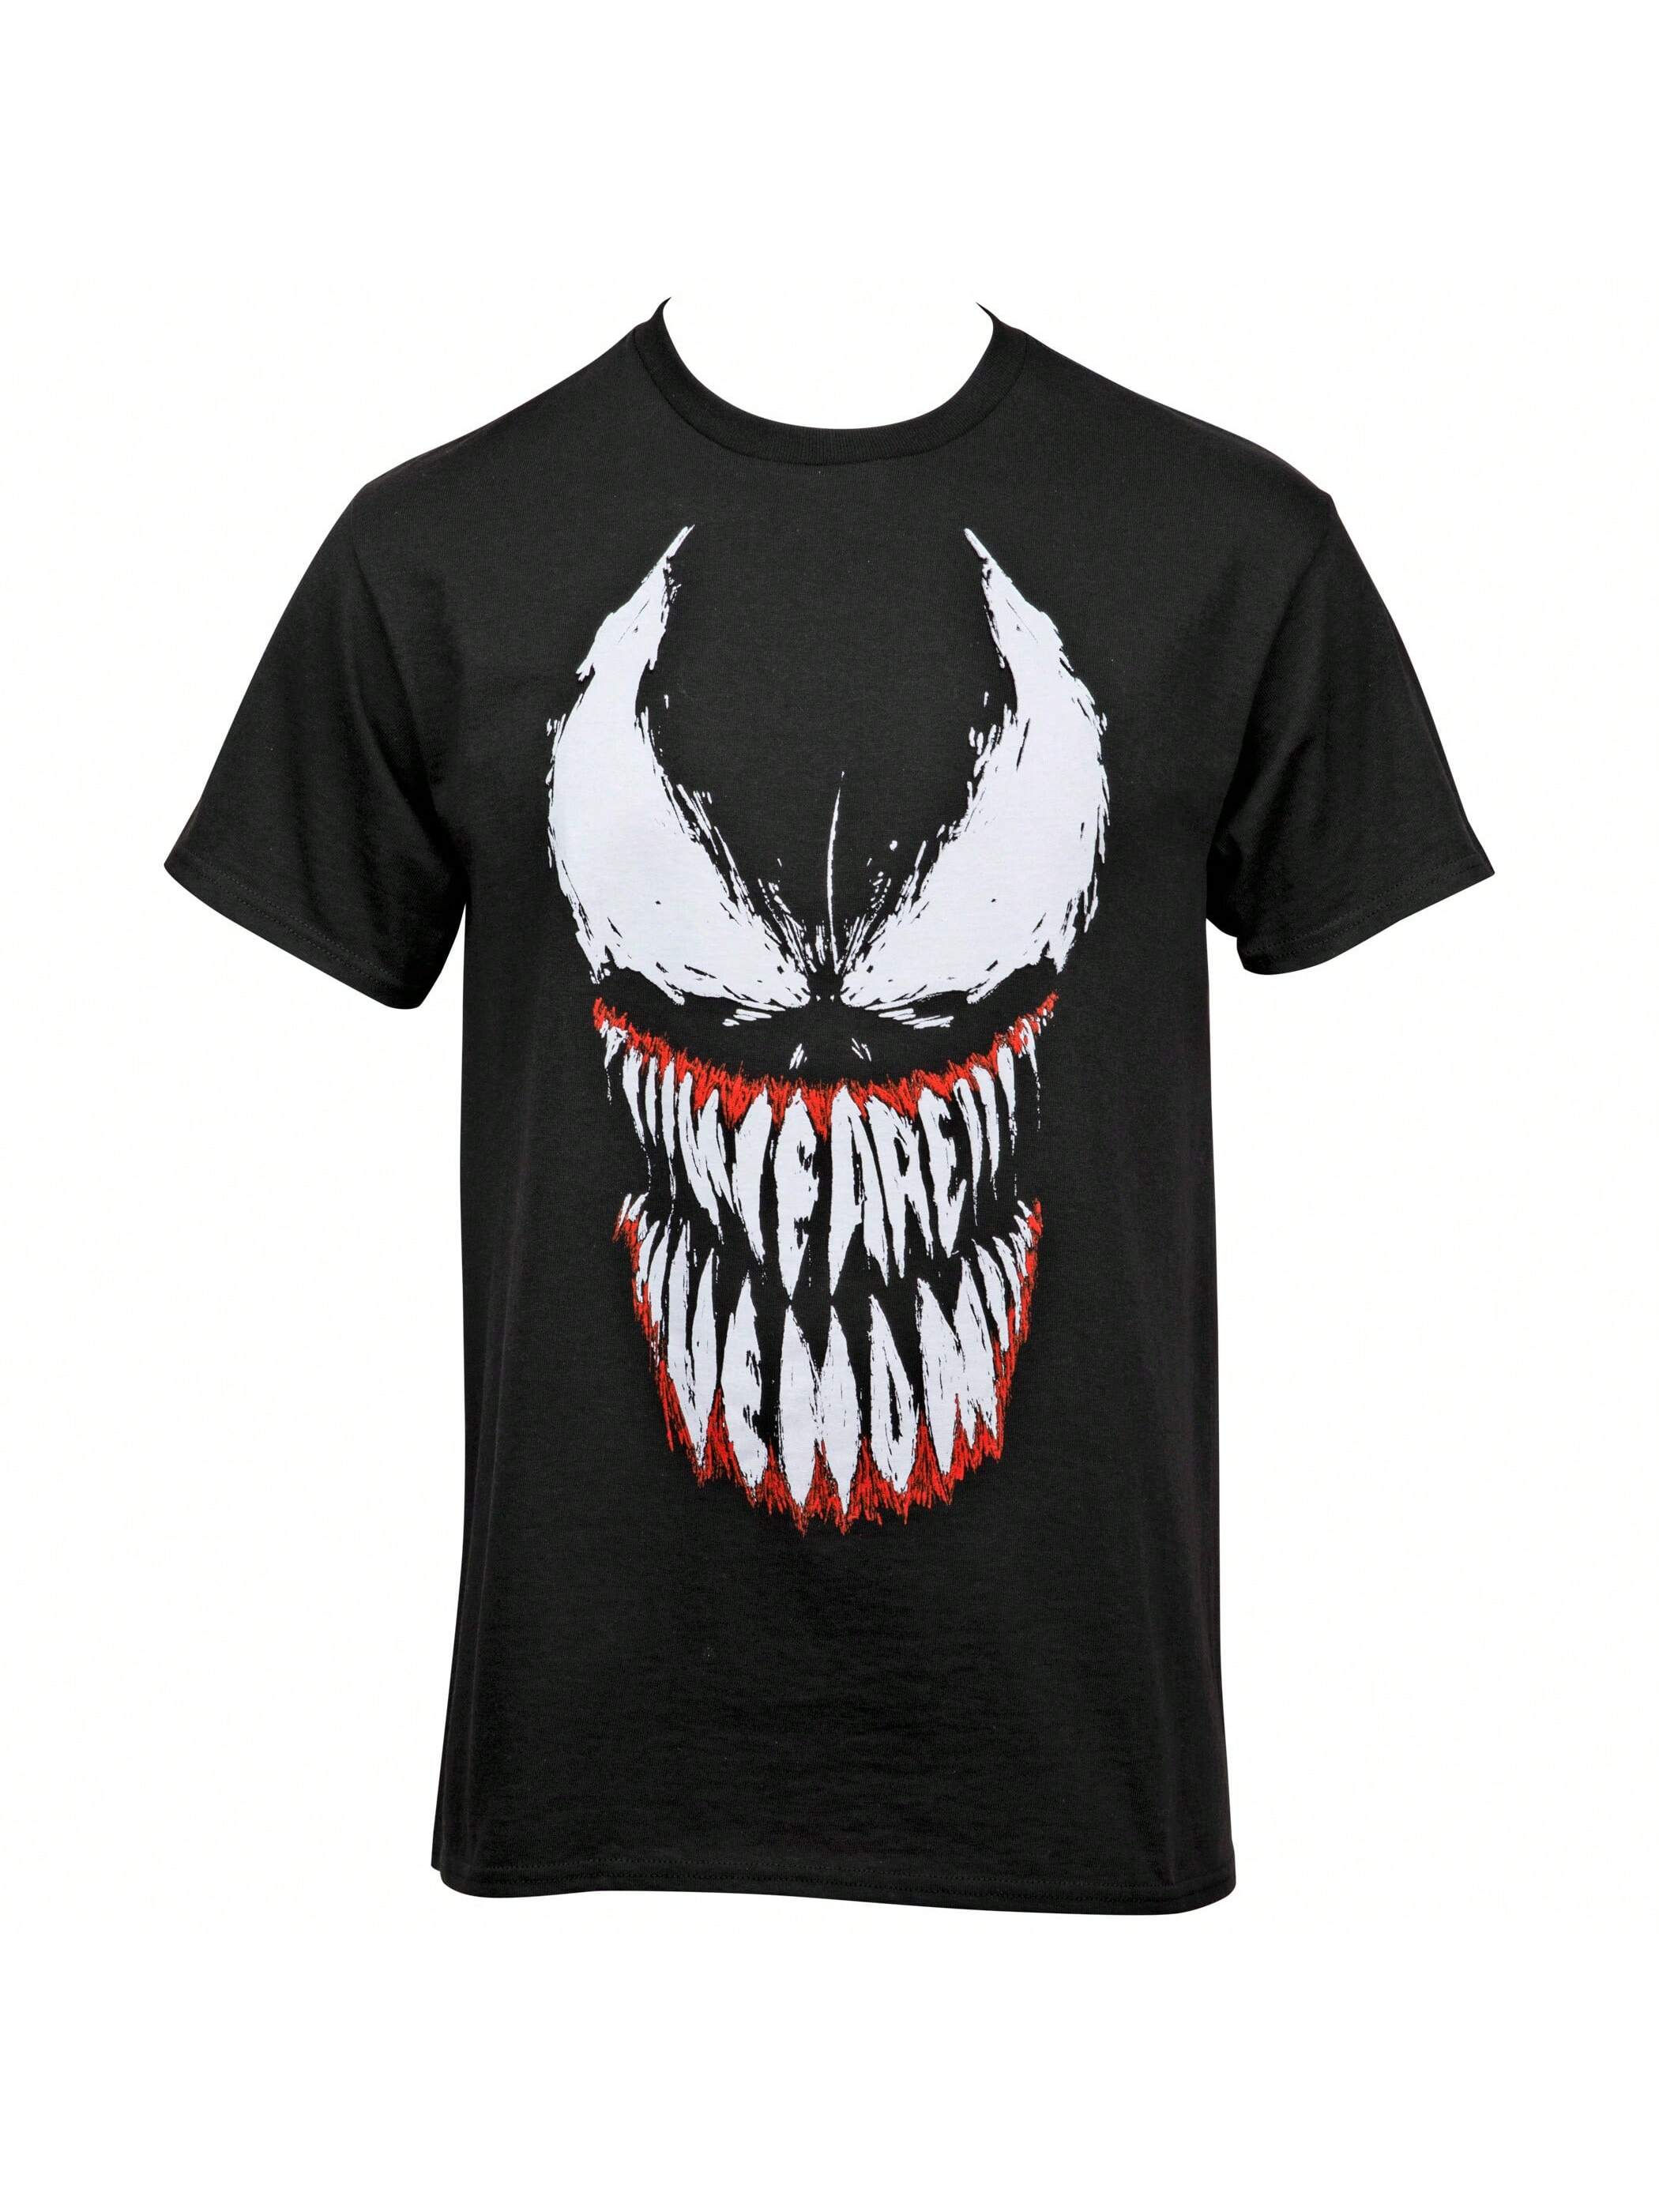 футболка marvel venom face с изображением we are venom teeth черный Футболка Marvel Venom Face с изображением We Are Venom Teeth, черный